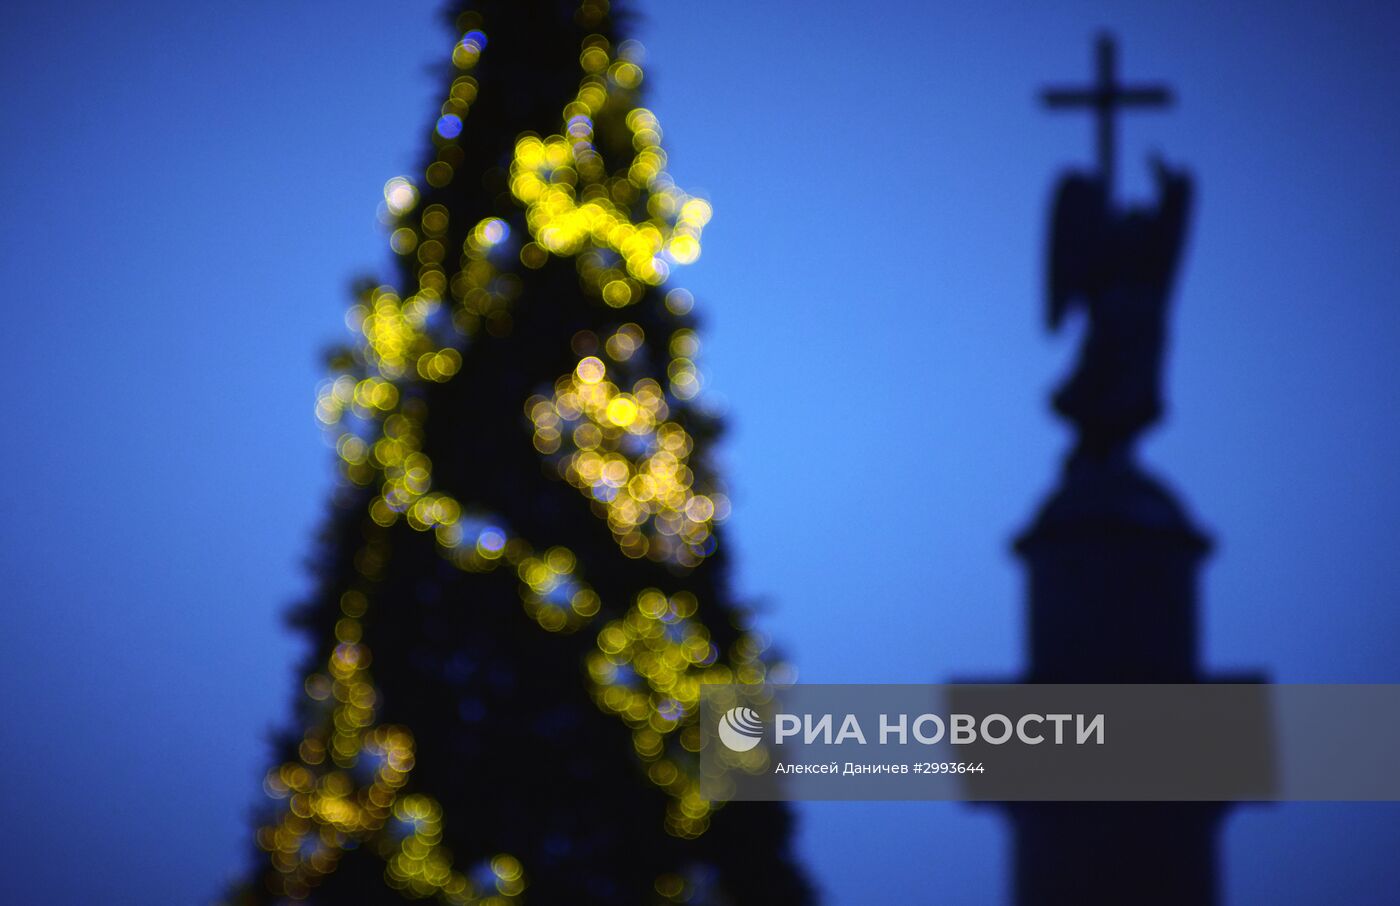 Монтаж главной новогодней елки в Санкт-Петербурге